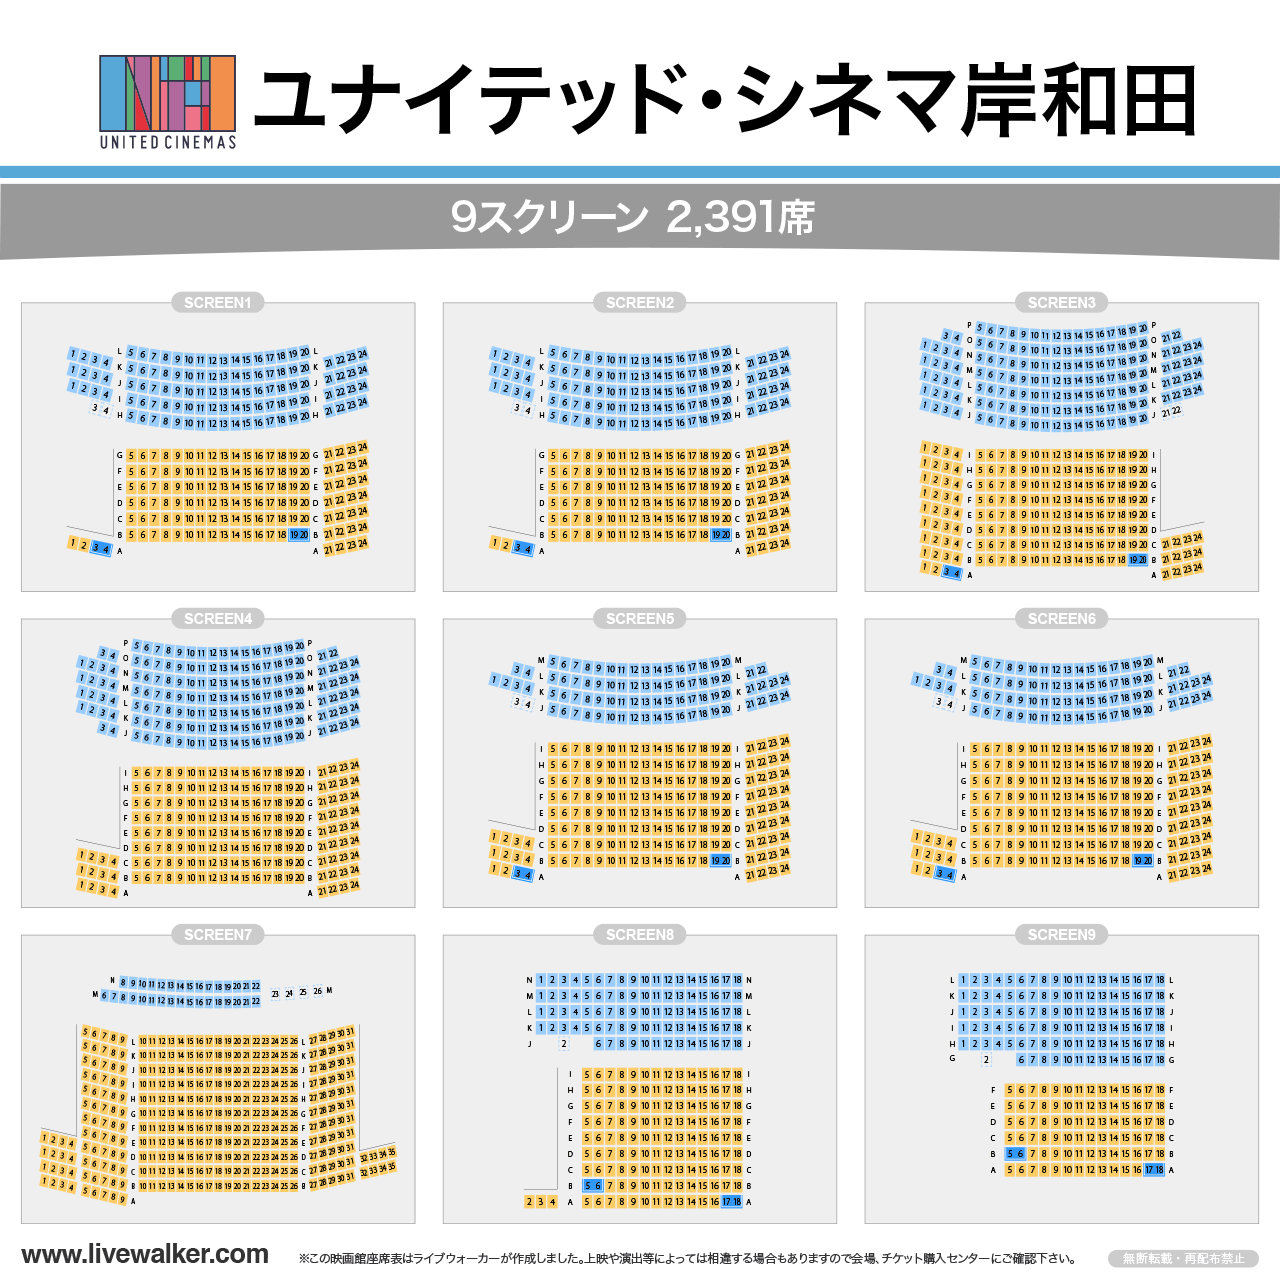 ユナイテッド・シネマ岸和田スクリーンの座席表